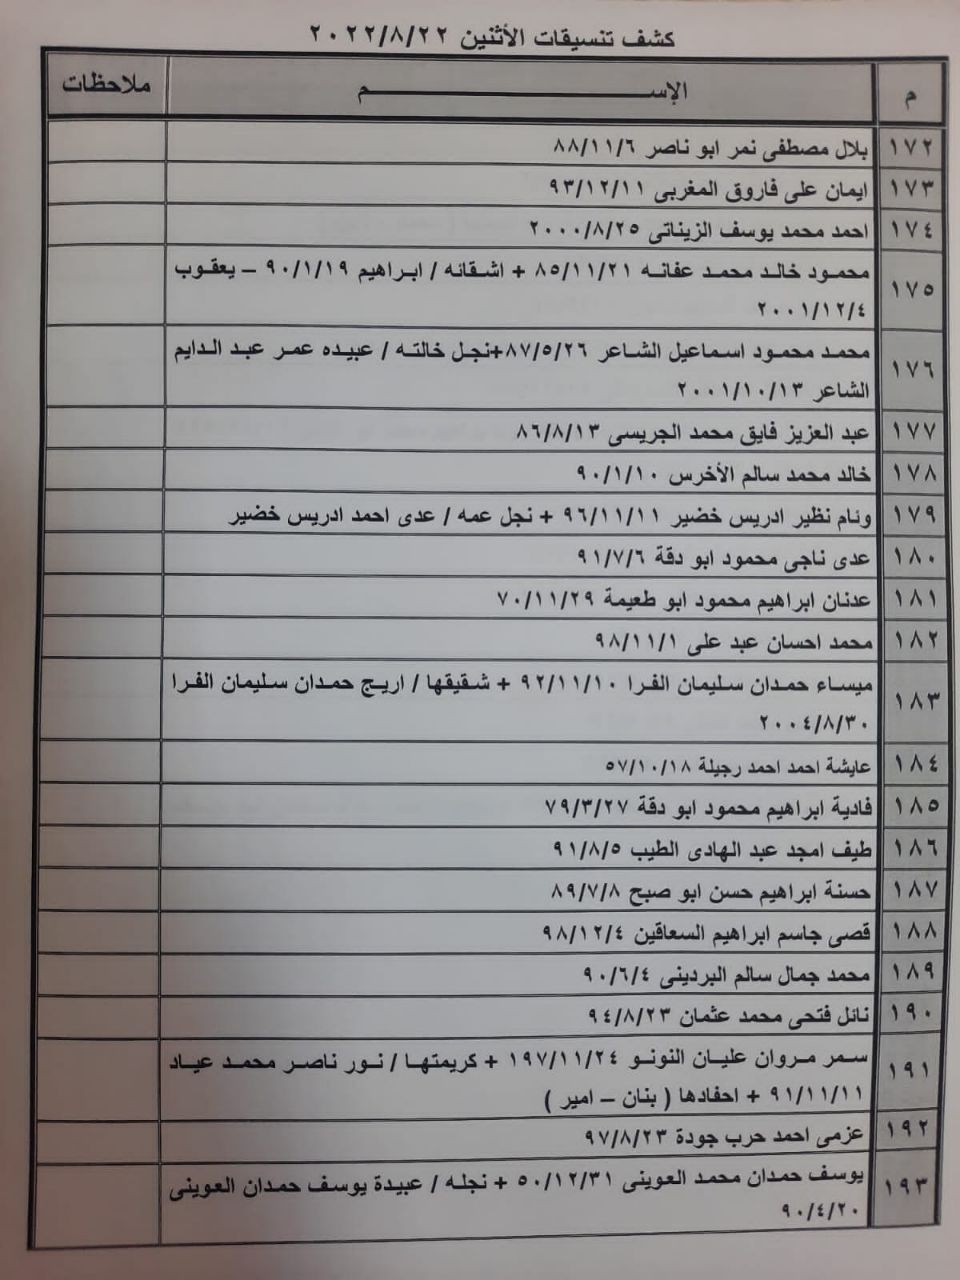 بالأسماء: كشف "التنسيقات المصرية" للسفر عبر معبر رفح ليوم الإثنين 22 أغسطس 2022